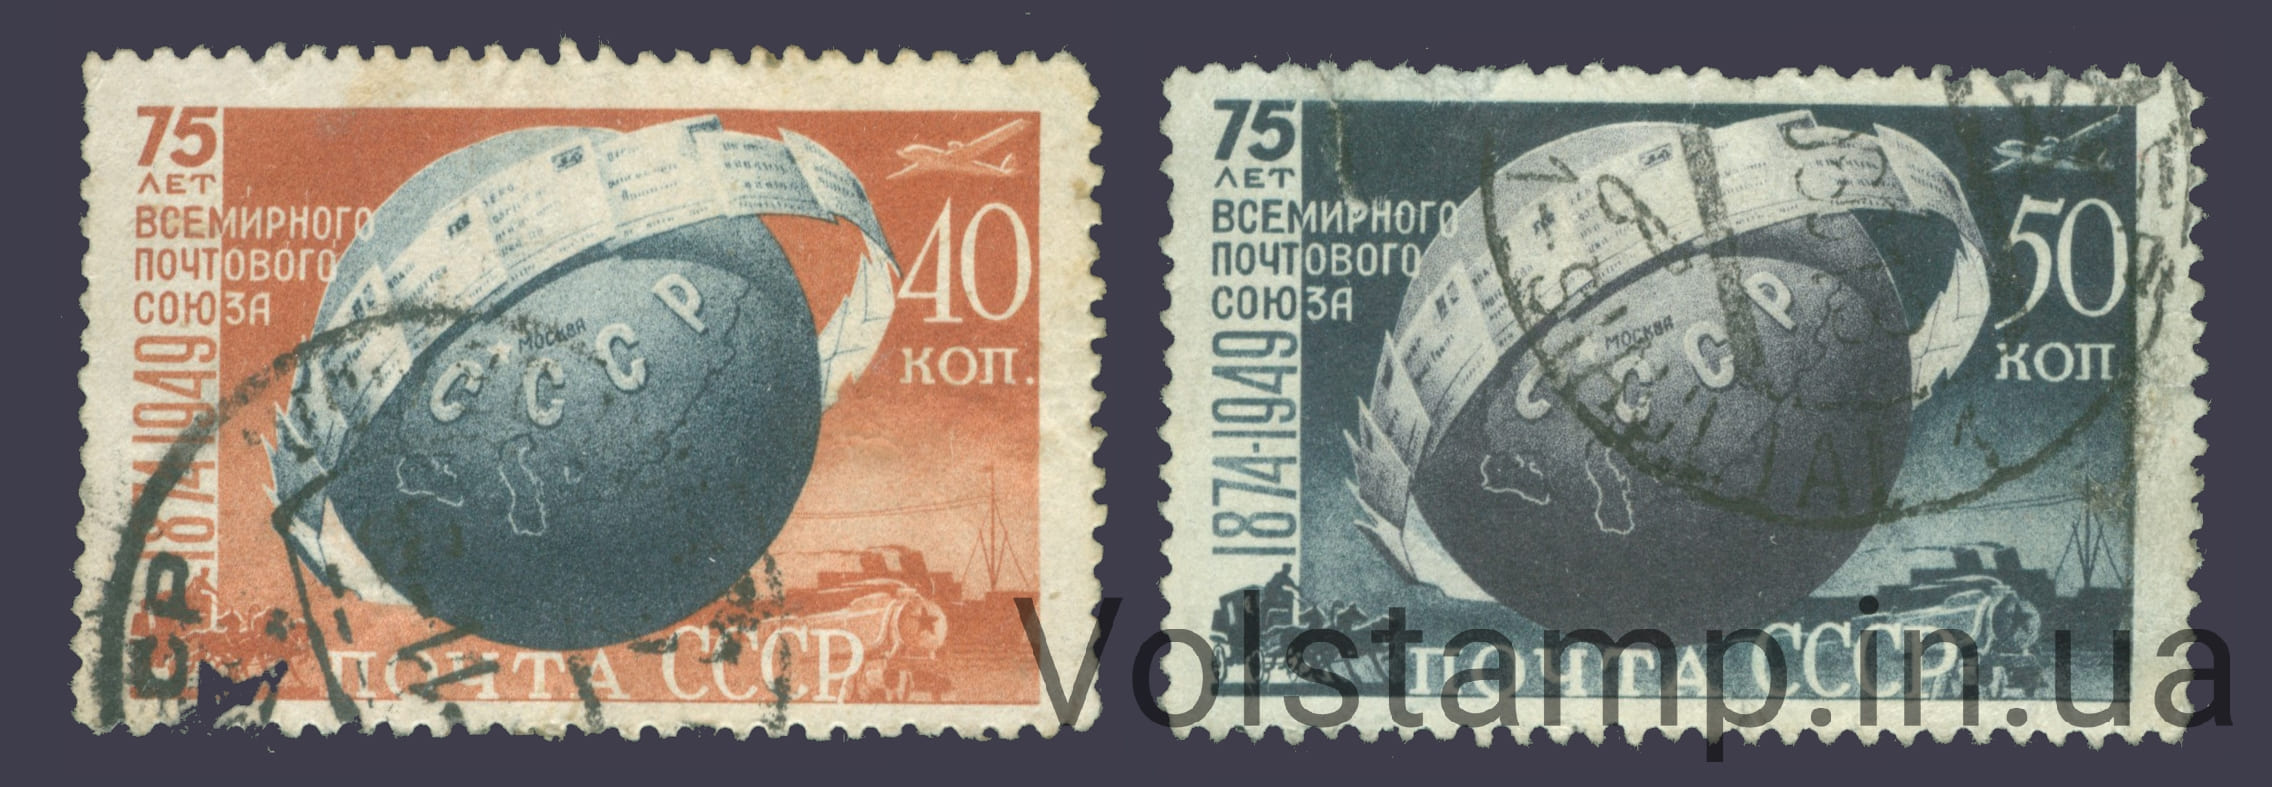 1949 серия марок 75 лет Всемирному почтовому союзу - Гашеные №1347-1348